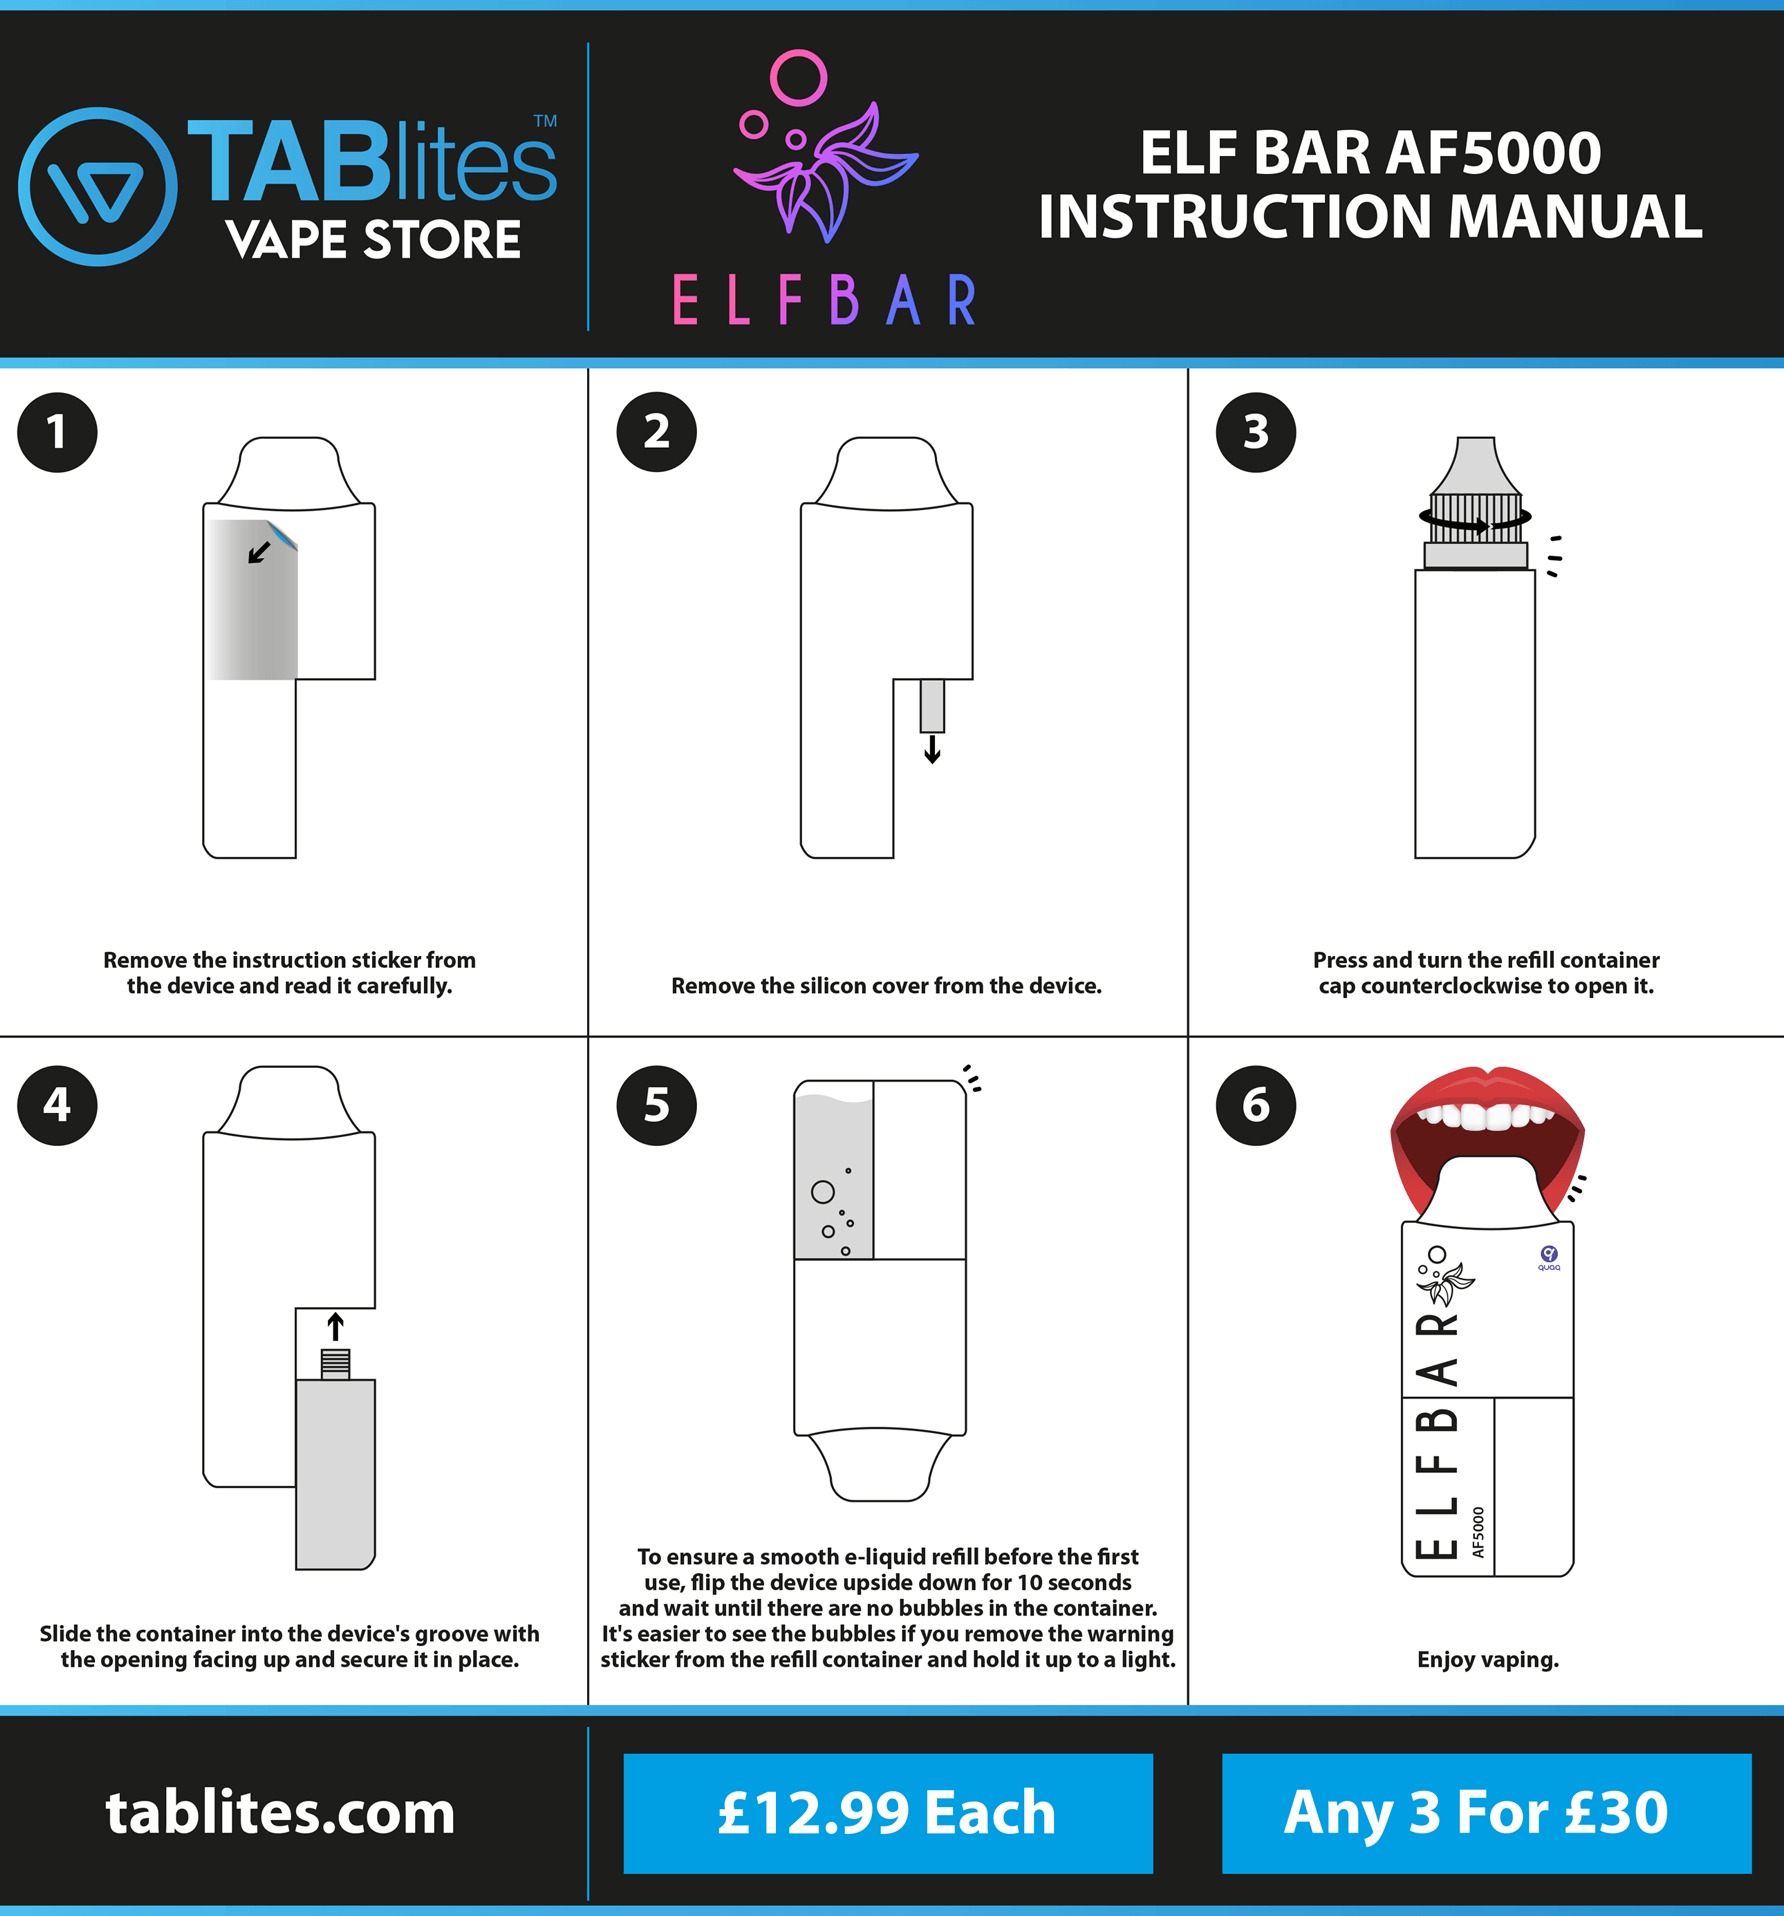 Elf Bar AF5000 Instruction Manual - produced by tablites.com 